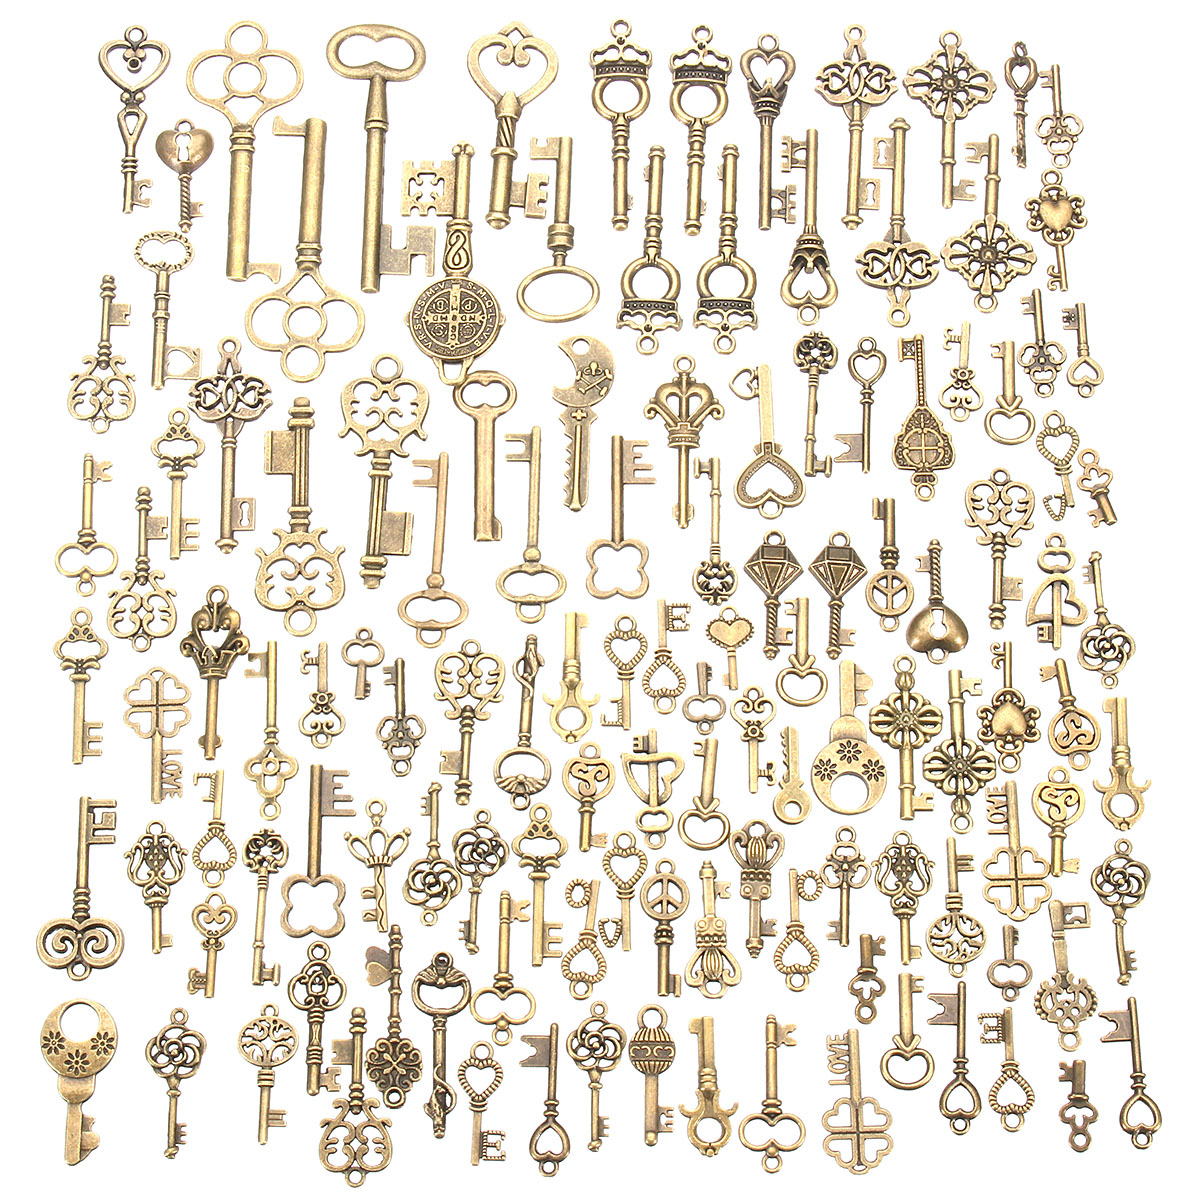 125Pcs-Vintage-Bronze-Key-For-Pendant-Necklace-Bracelet-DIY-Handmade-Accessories-Decoration-1192644-1